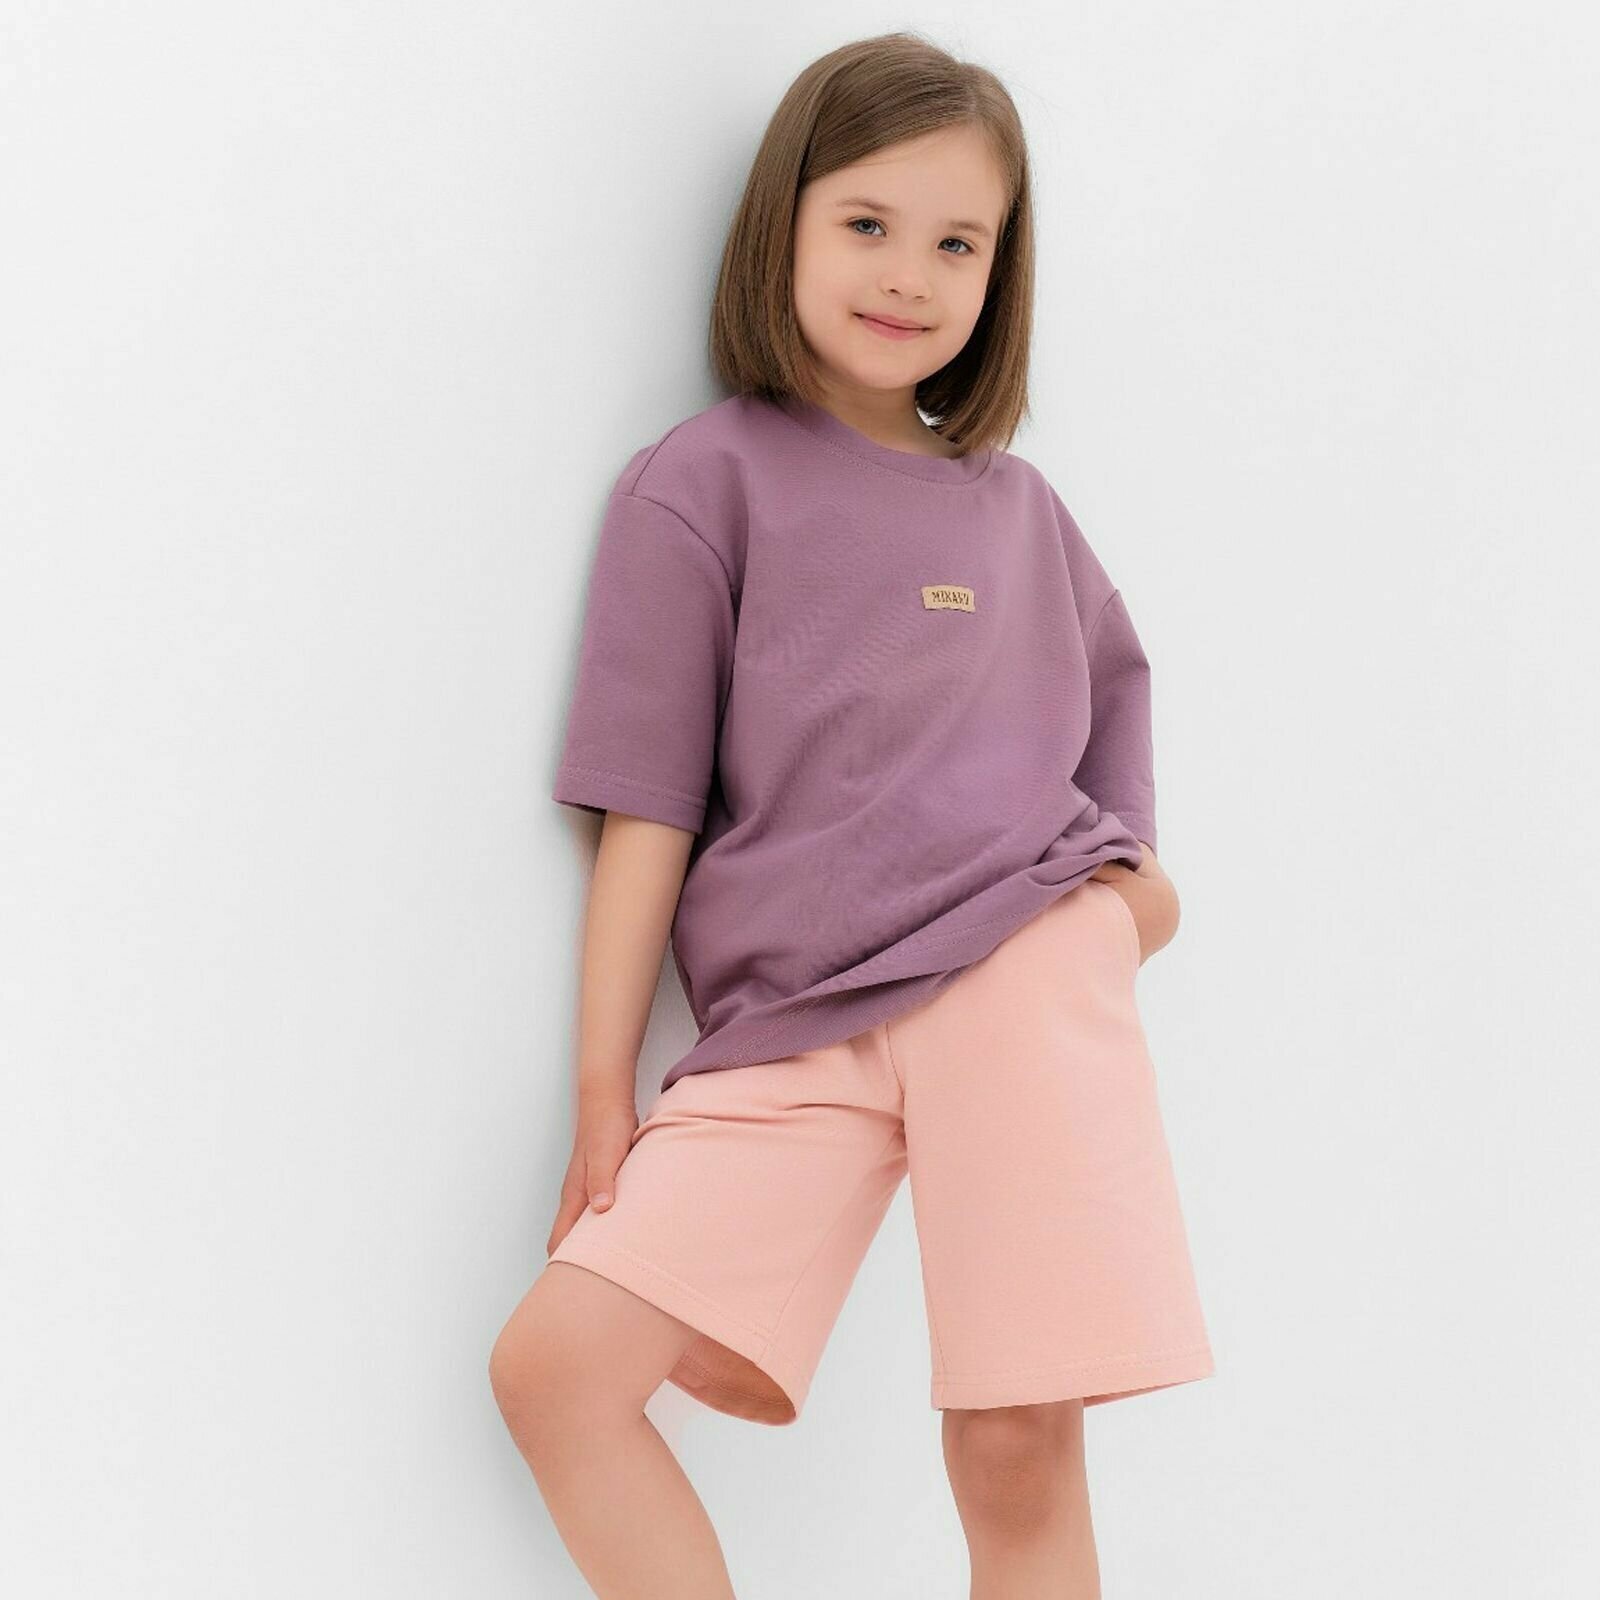 Комплект одежды Minaku, размер 104, бежевый, фиолетовый